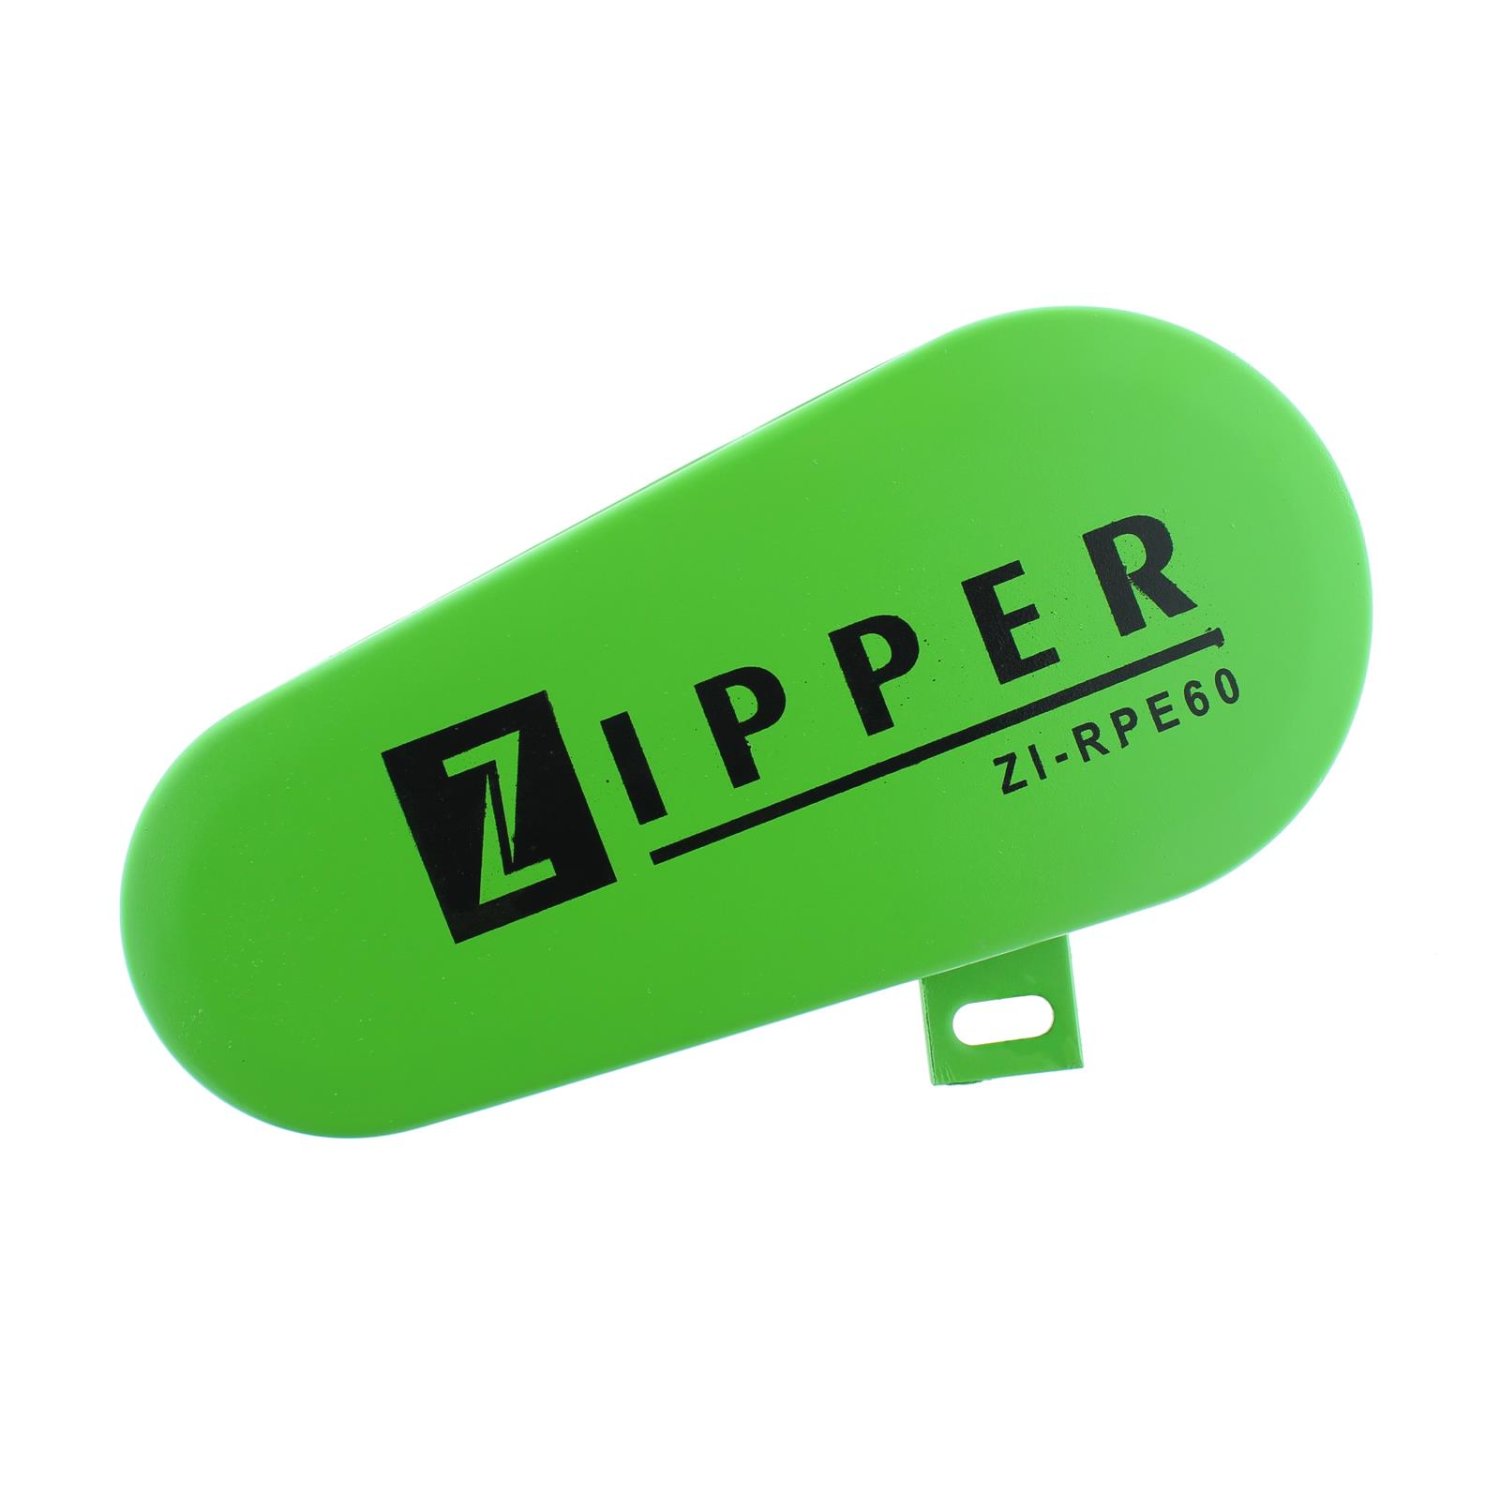 Keilriemenabdeckung für Zipper Rüttelplatte ZI-RPE60, 29,00